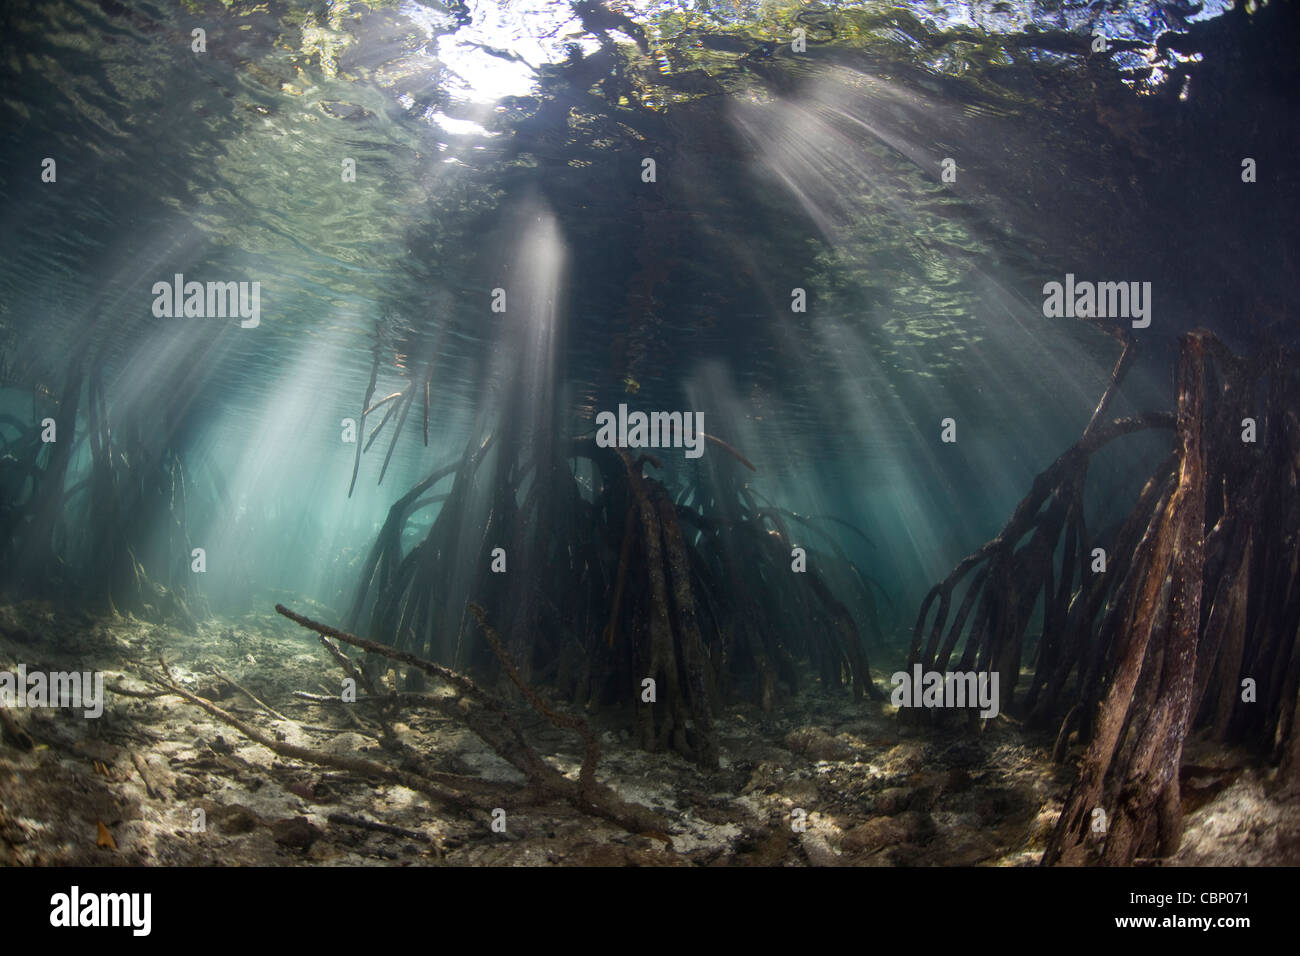 Strahlen der Sonne dringen die Gewässer von einem Mangrovenwald. Die Prop-Wurzeln bieten Kindergarten Lebensraum für Fische und Wirbellose Tiere. Stockfoto